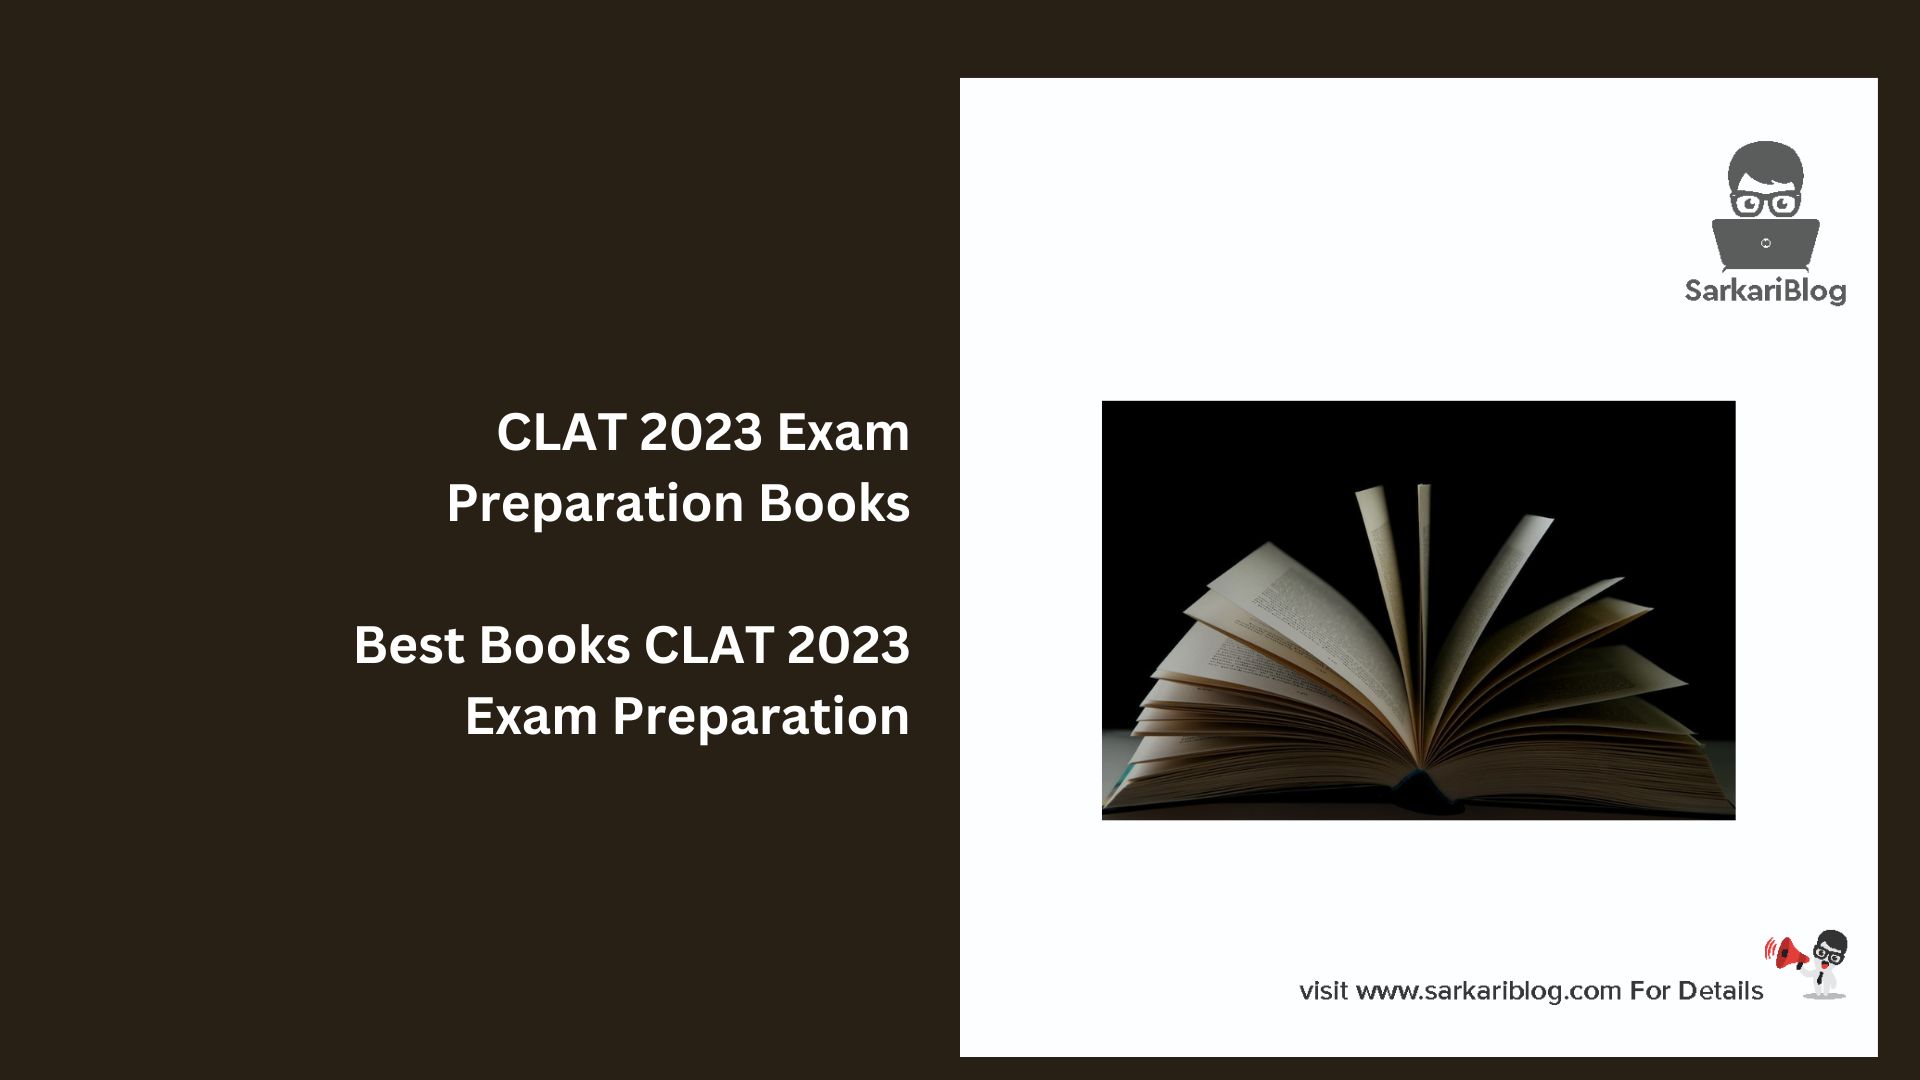 CLAT 2023 Exam Preparation Books